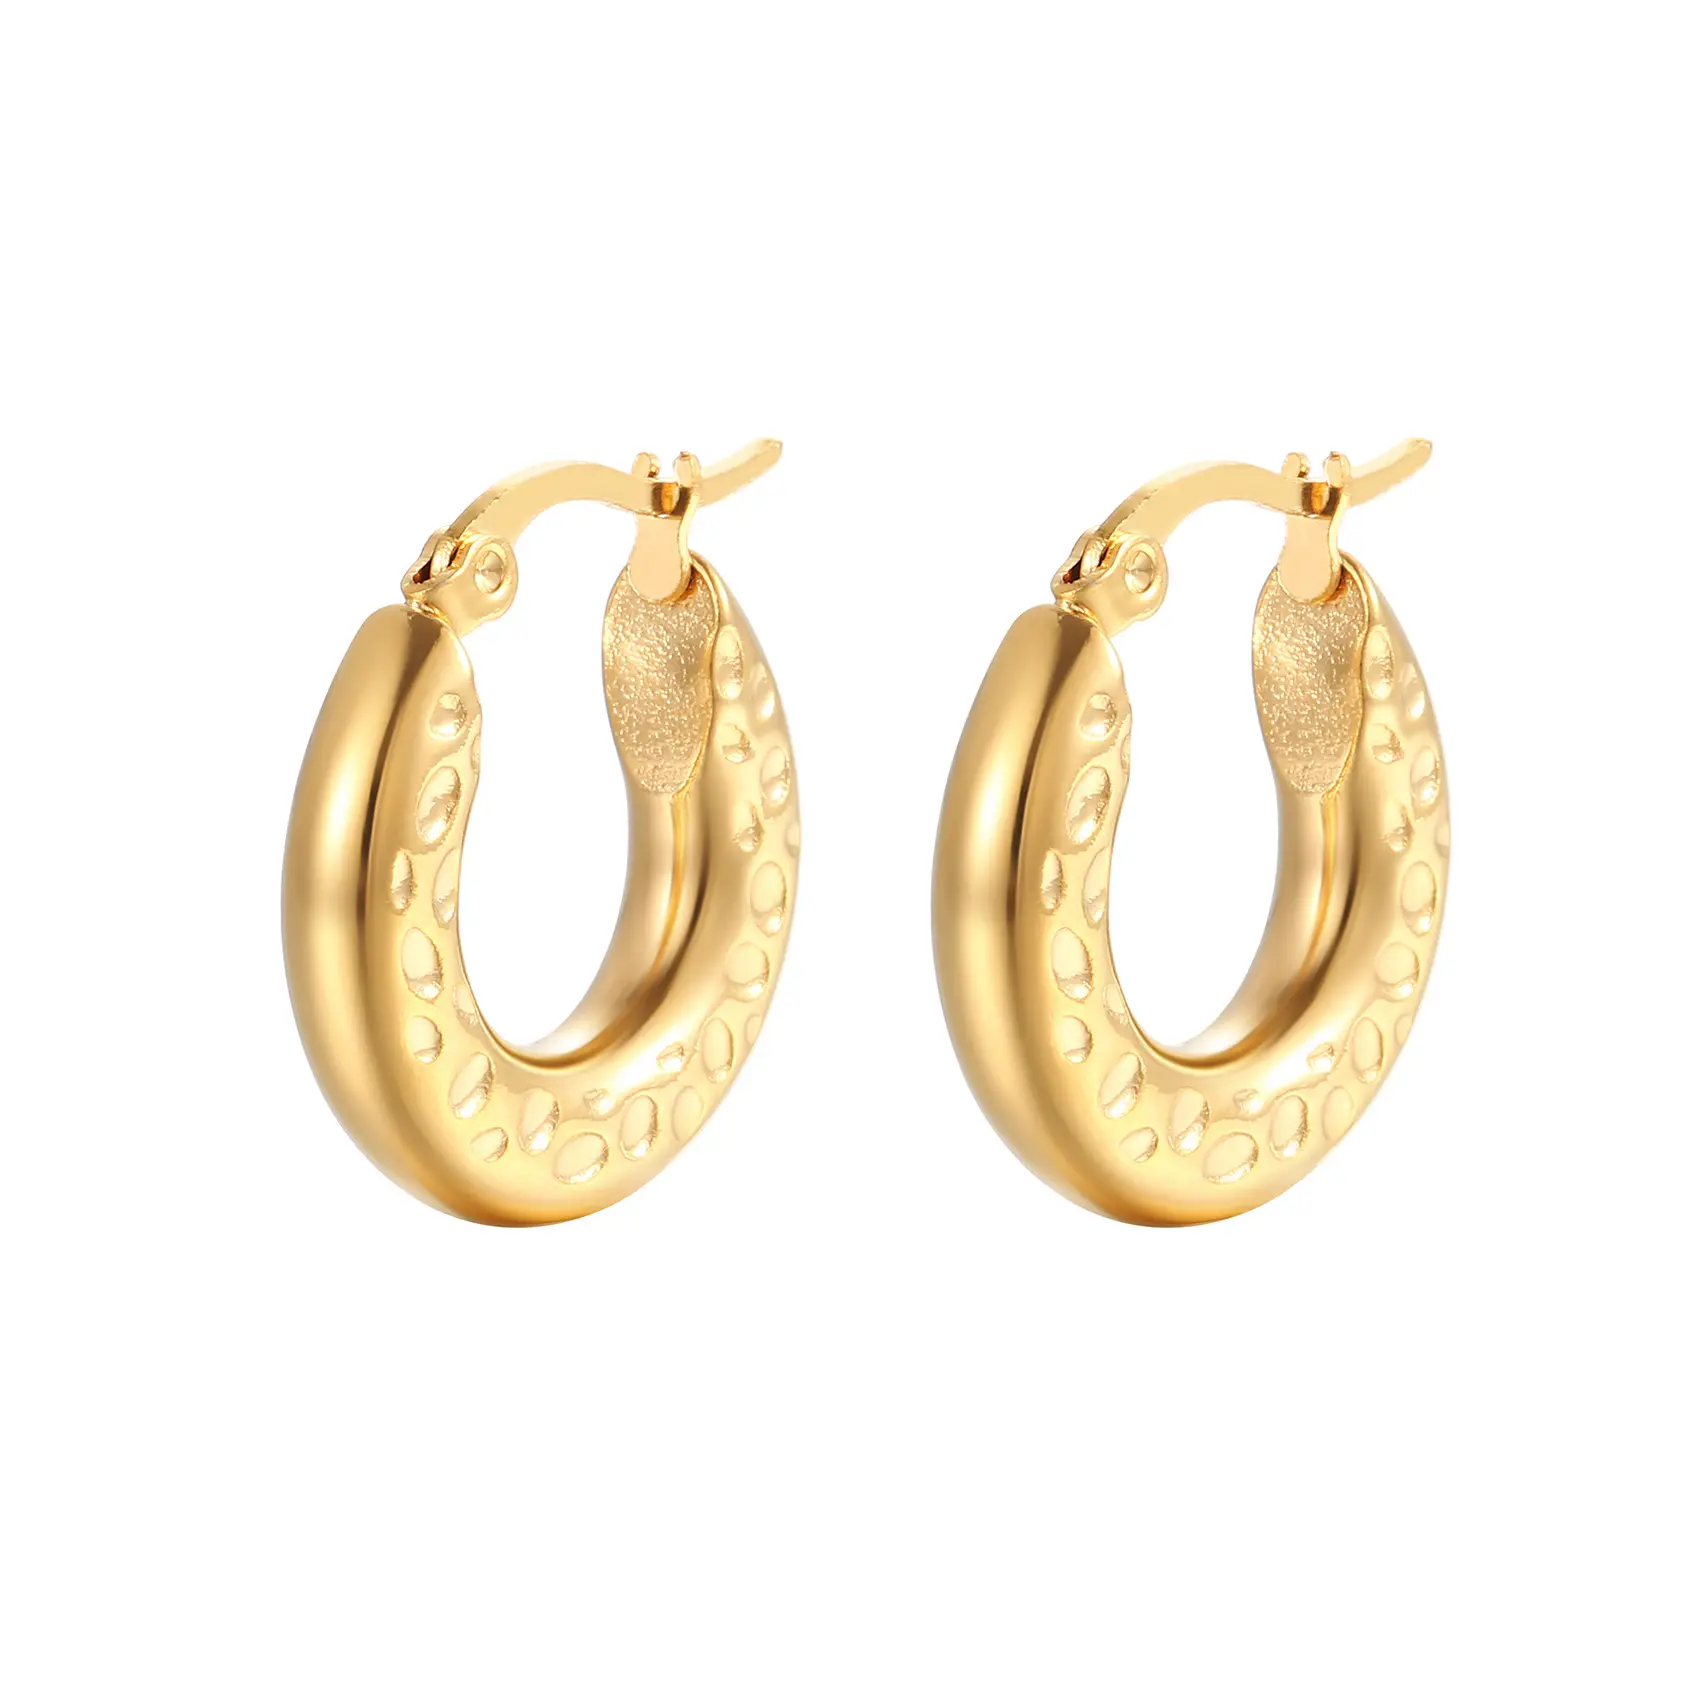 Nabest Hypoallergenic PVD Stainless Steel Hoop Earrings Waterproof Circular Women Chunky Huggie Earring Jewelry